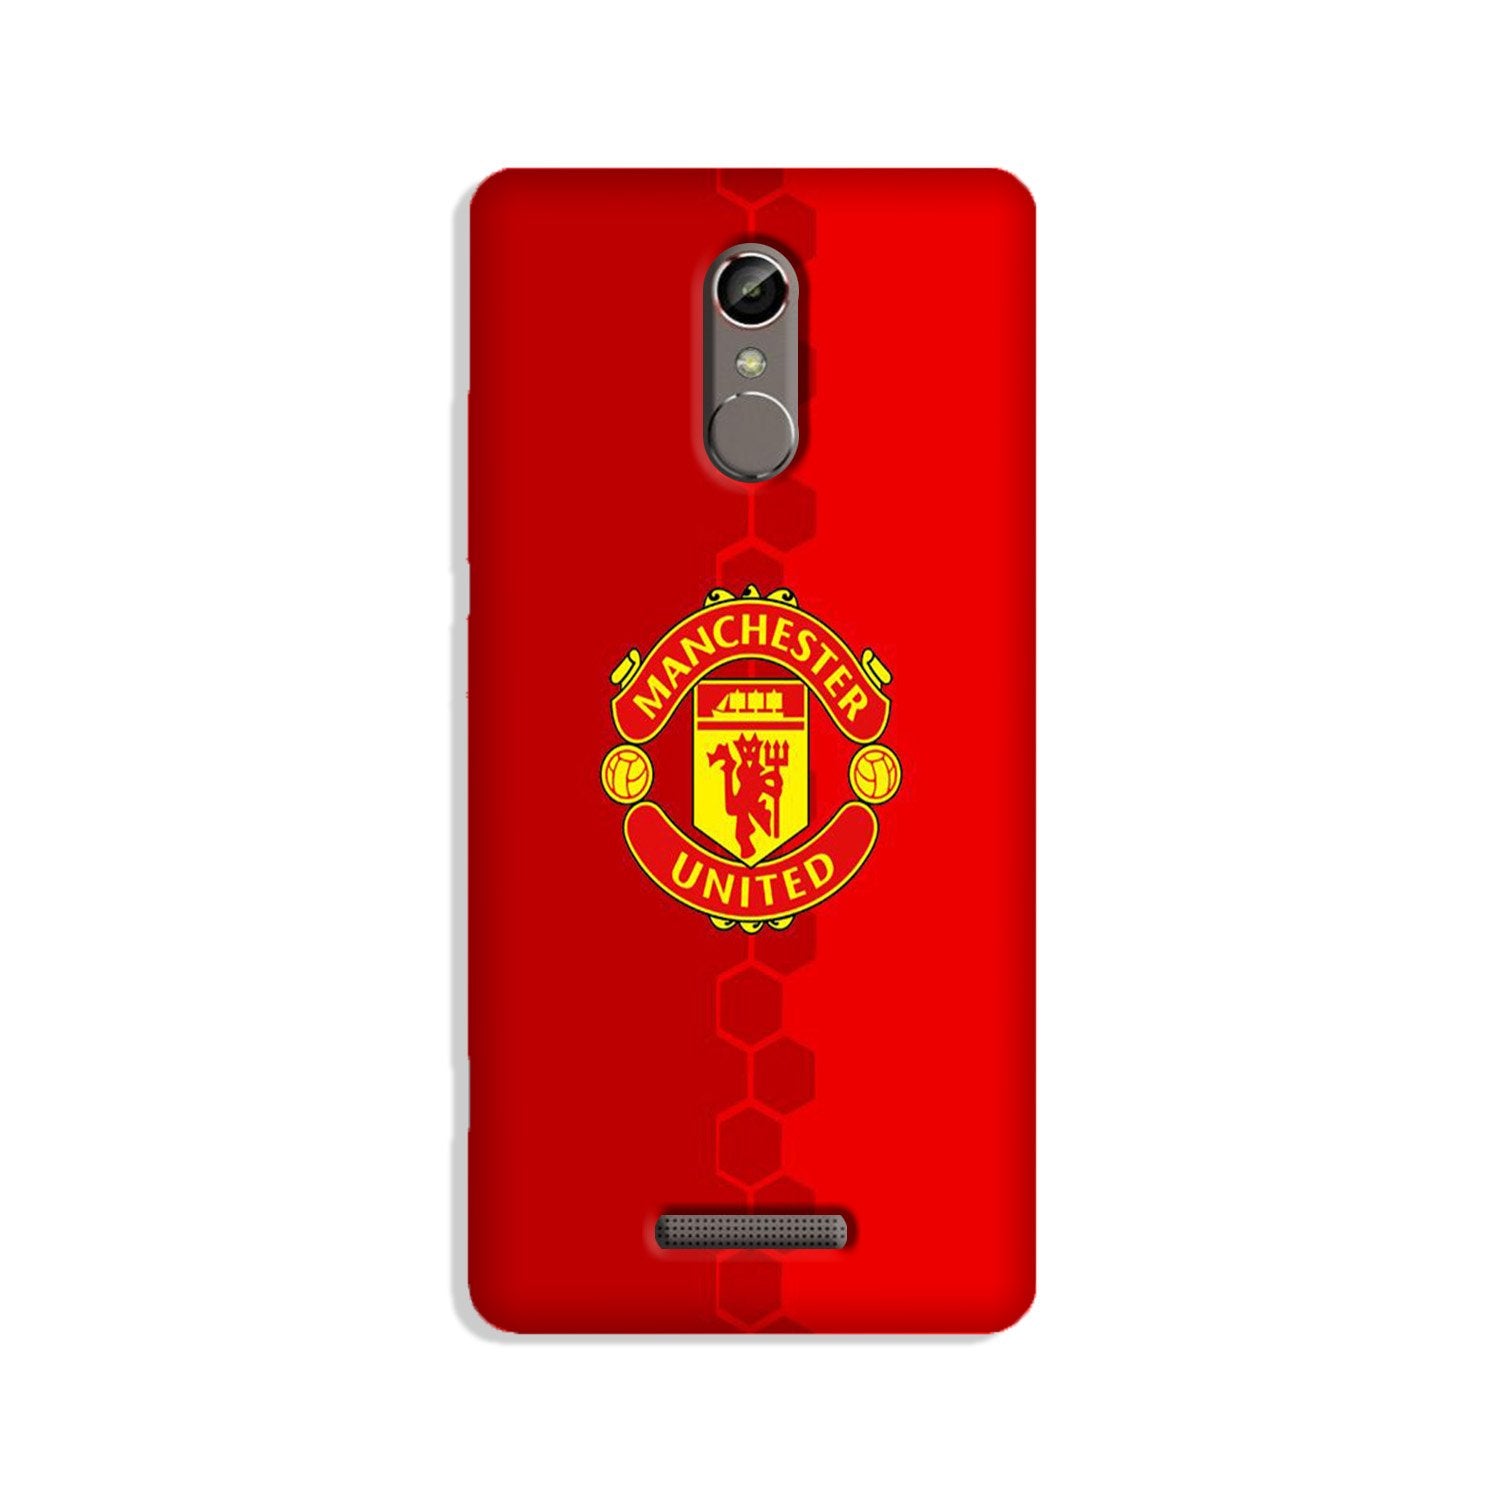 Manchester United Case for Redmi Note 3(Design - 157)